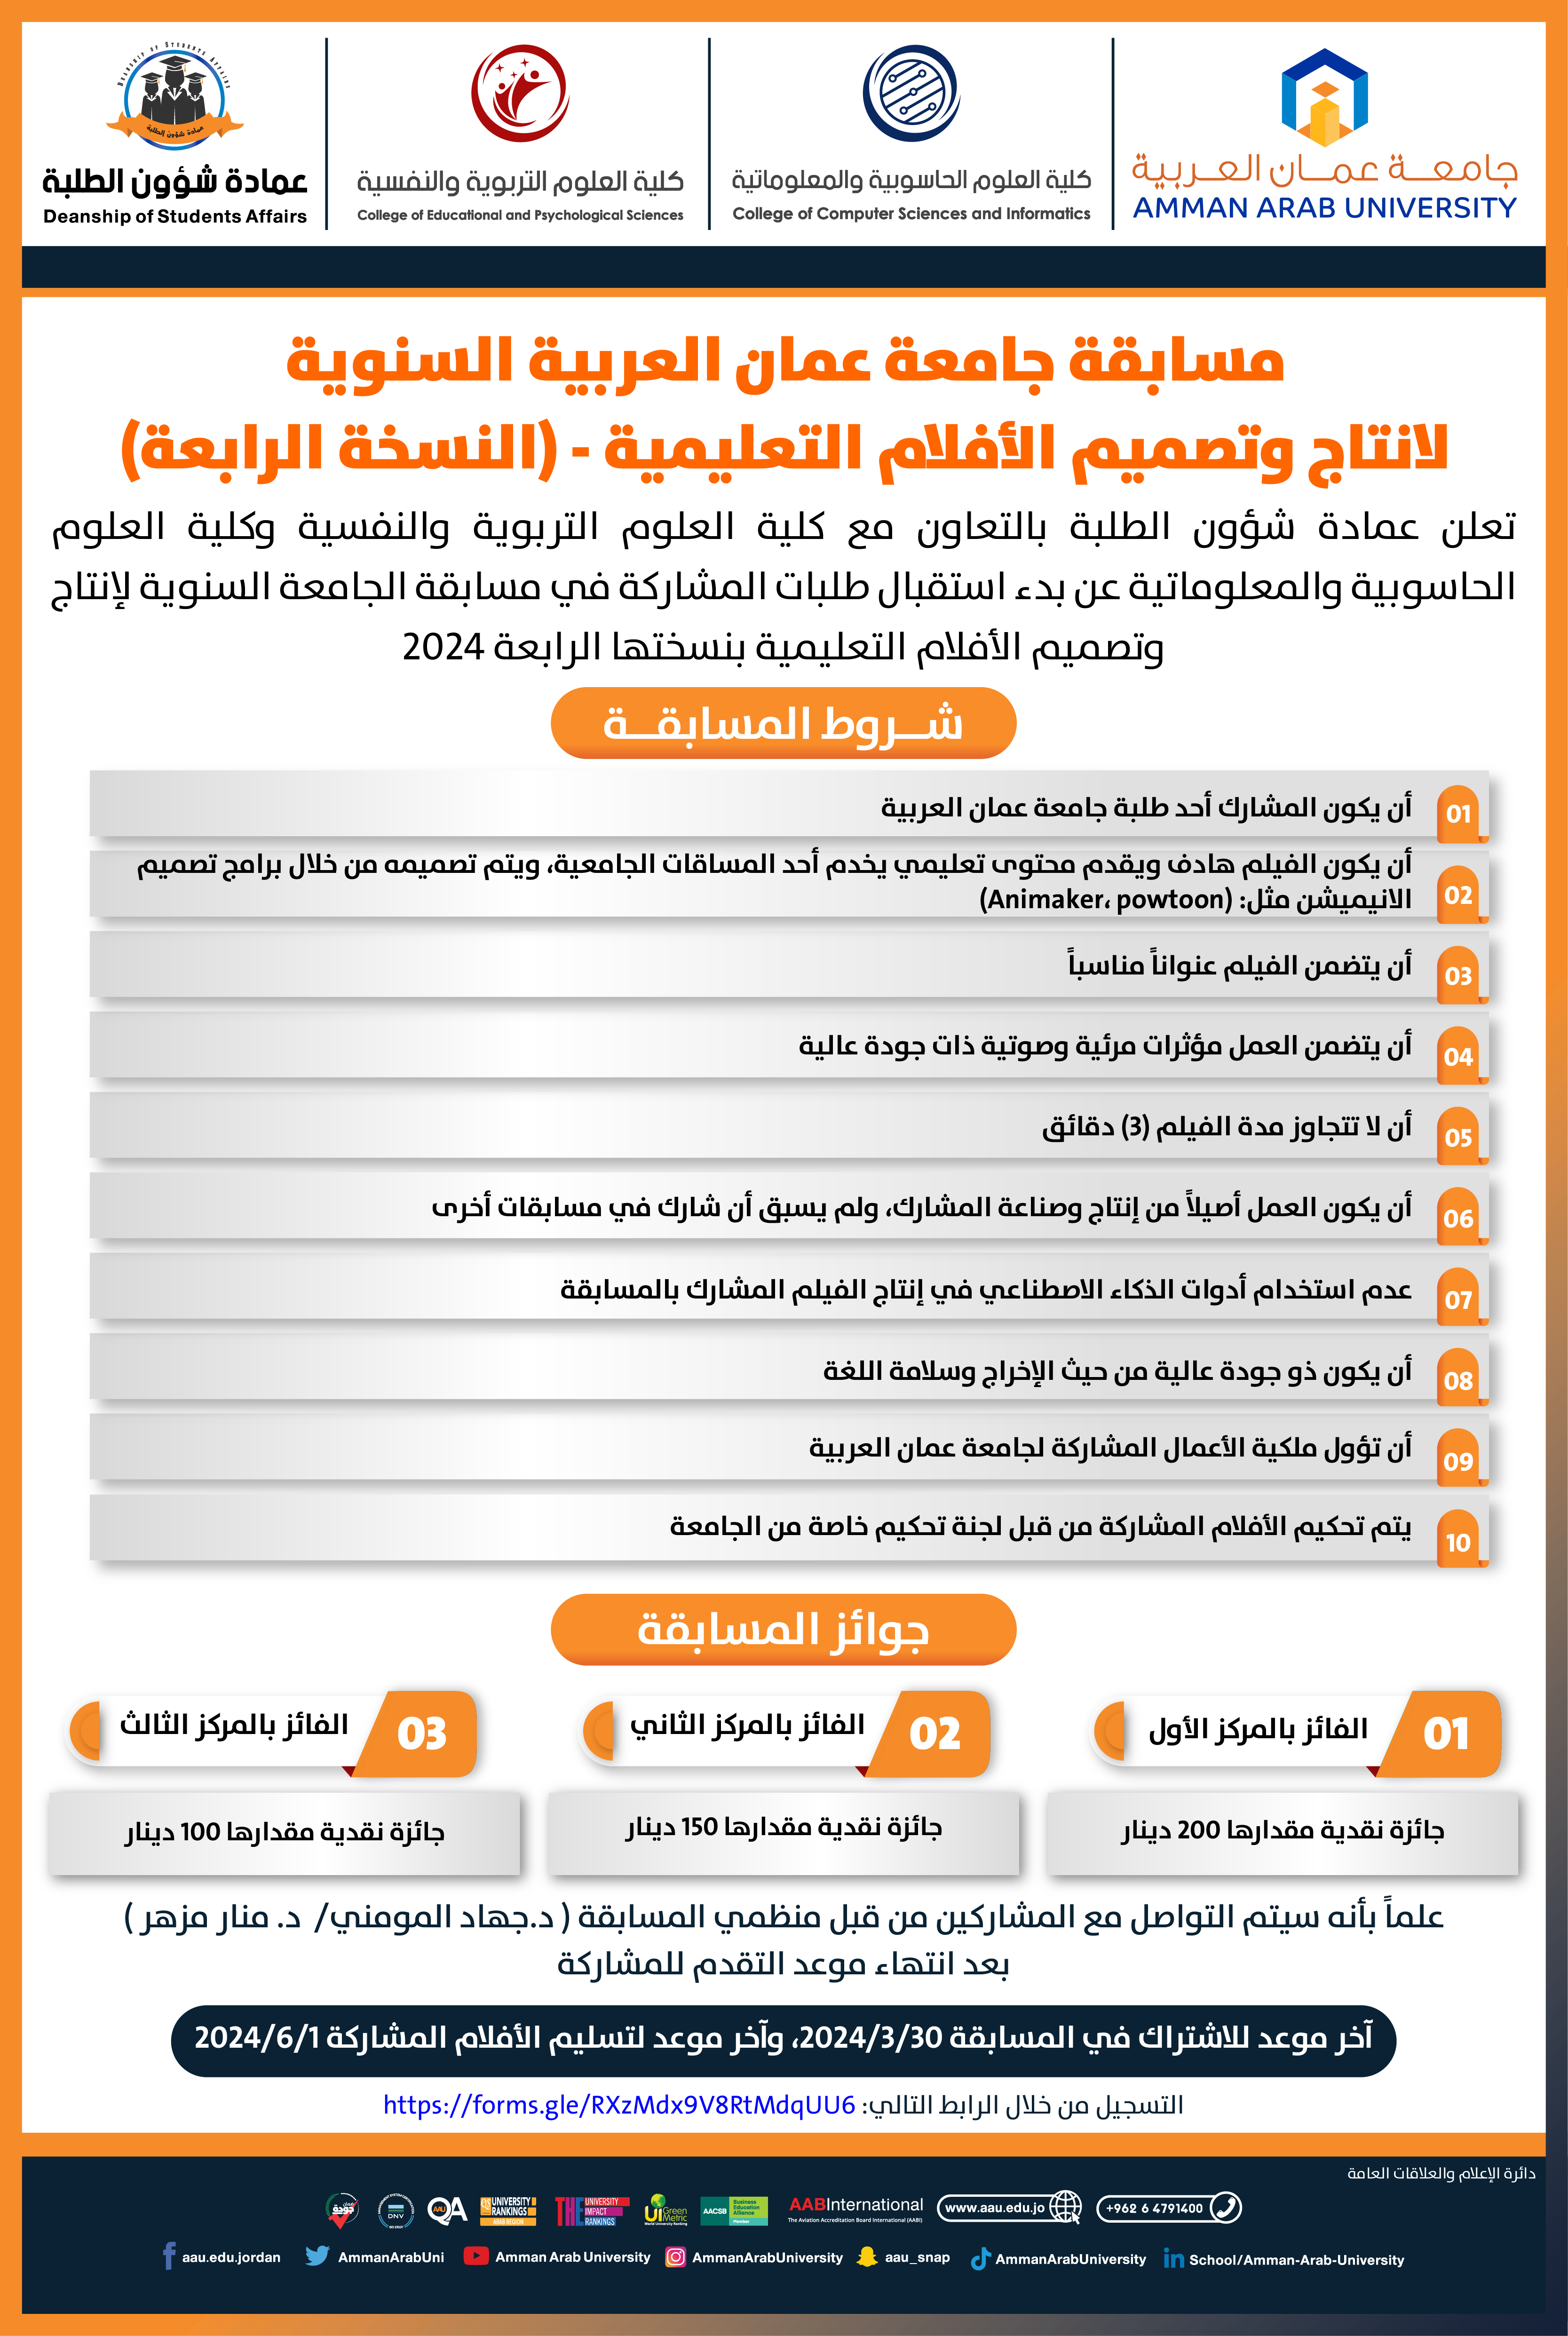 اعلان مسابقة جامعة عمان العربية السنوية لانتاج وتصميم الأفلام التعليمية - (النسخة الرابعة)